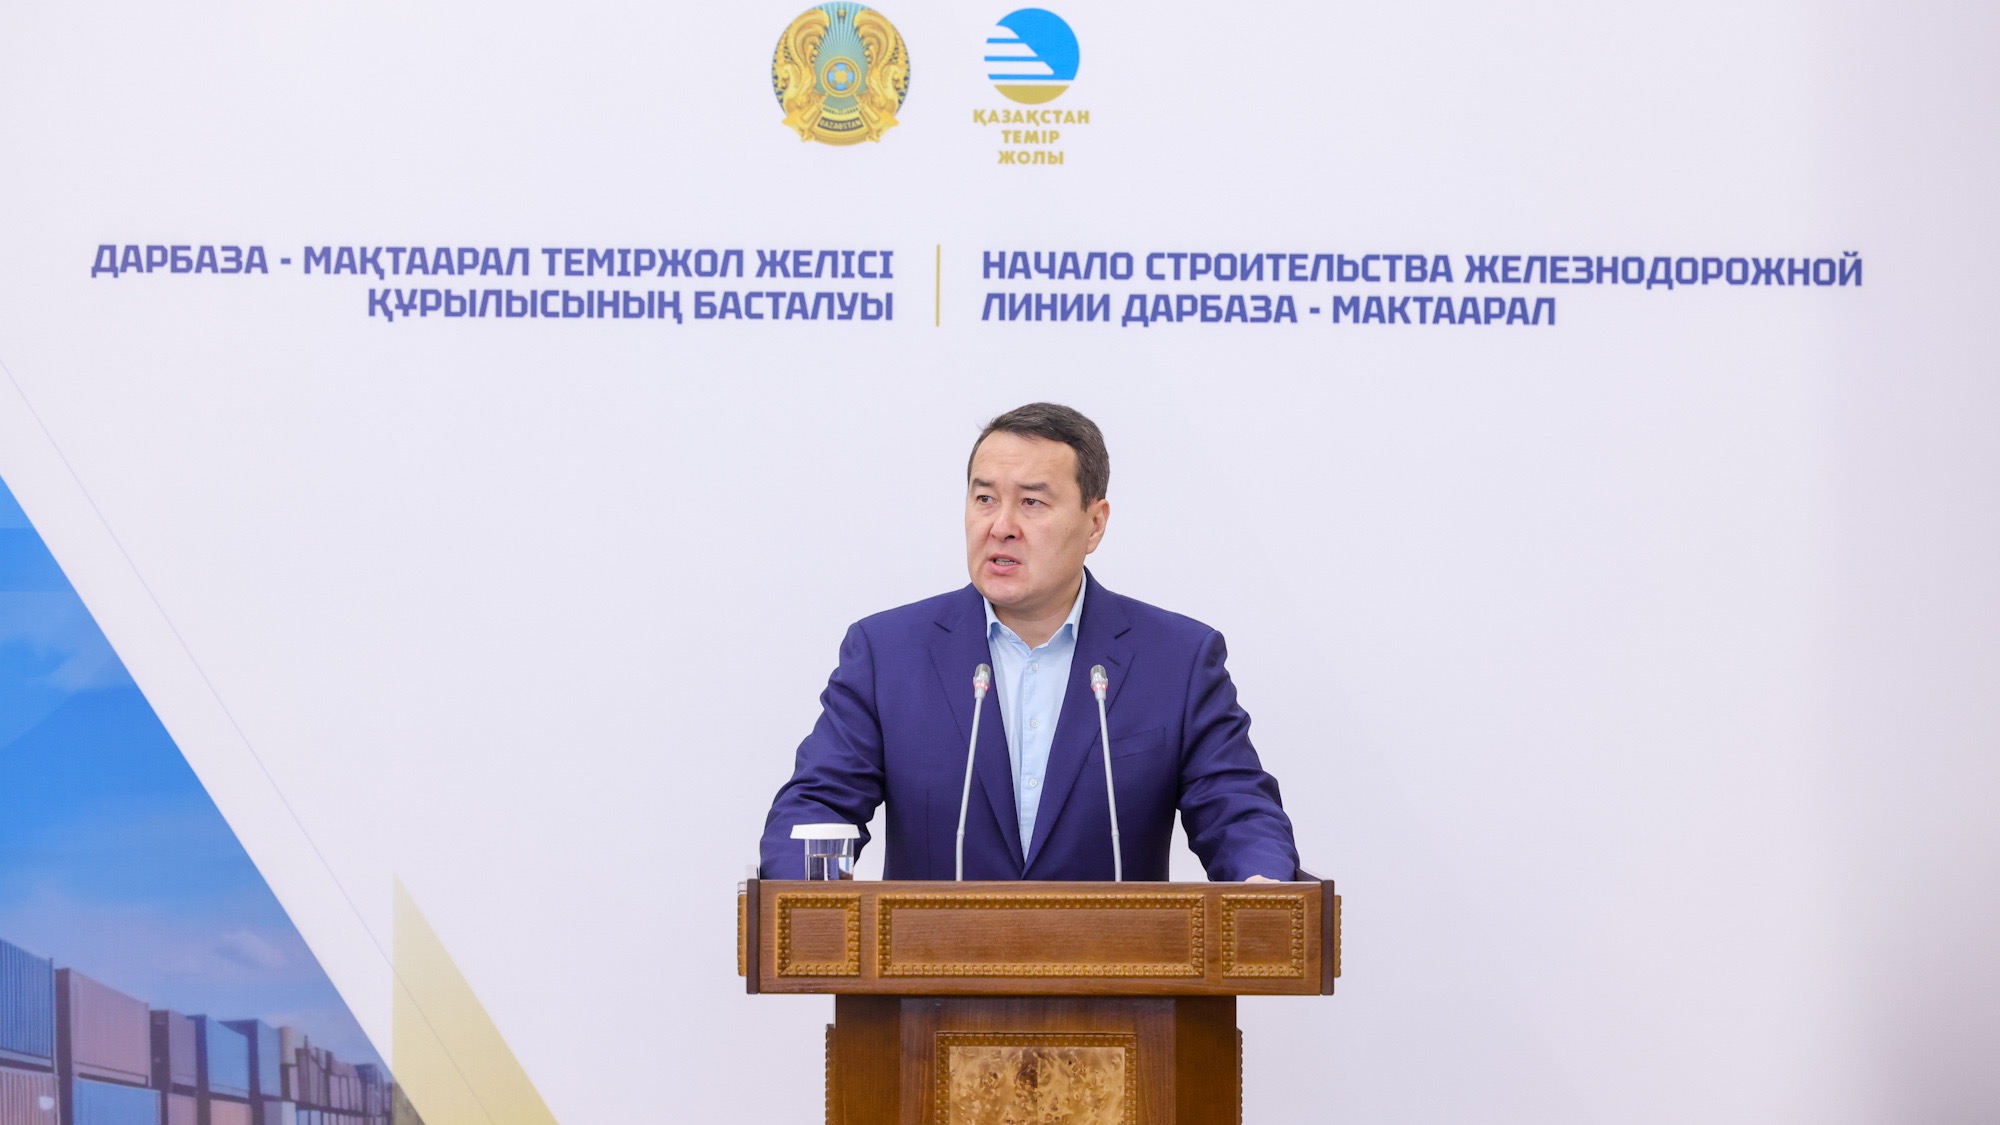 Prime Minister of Kazakhstan, Alikhan Smailov